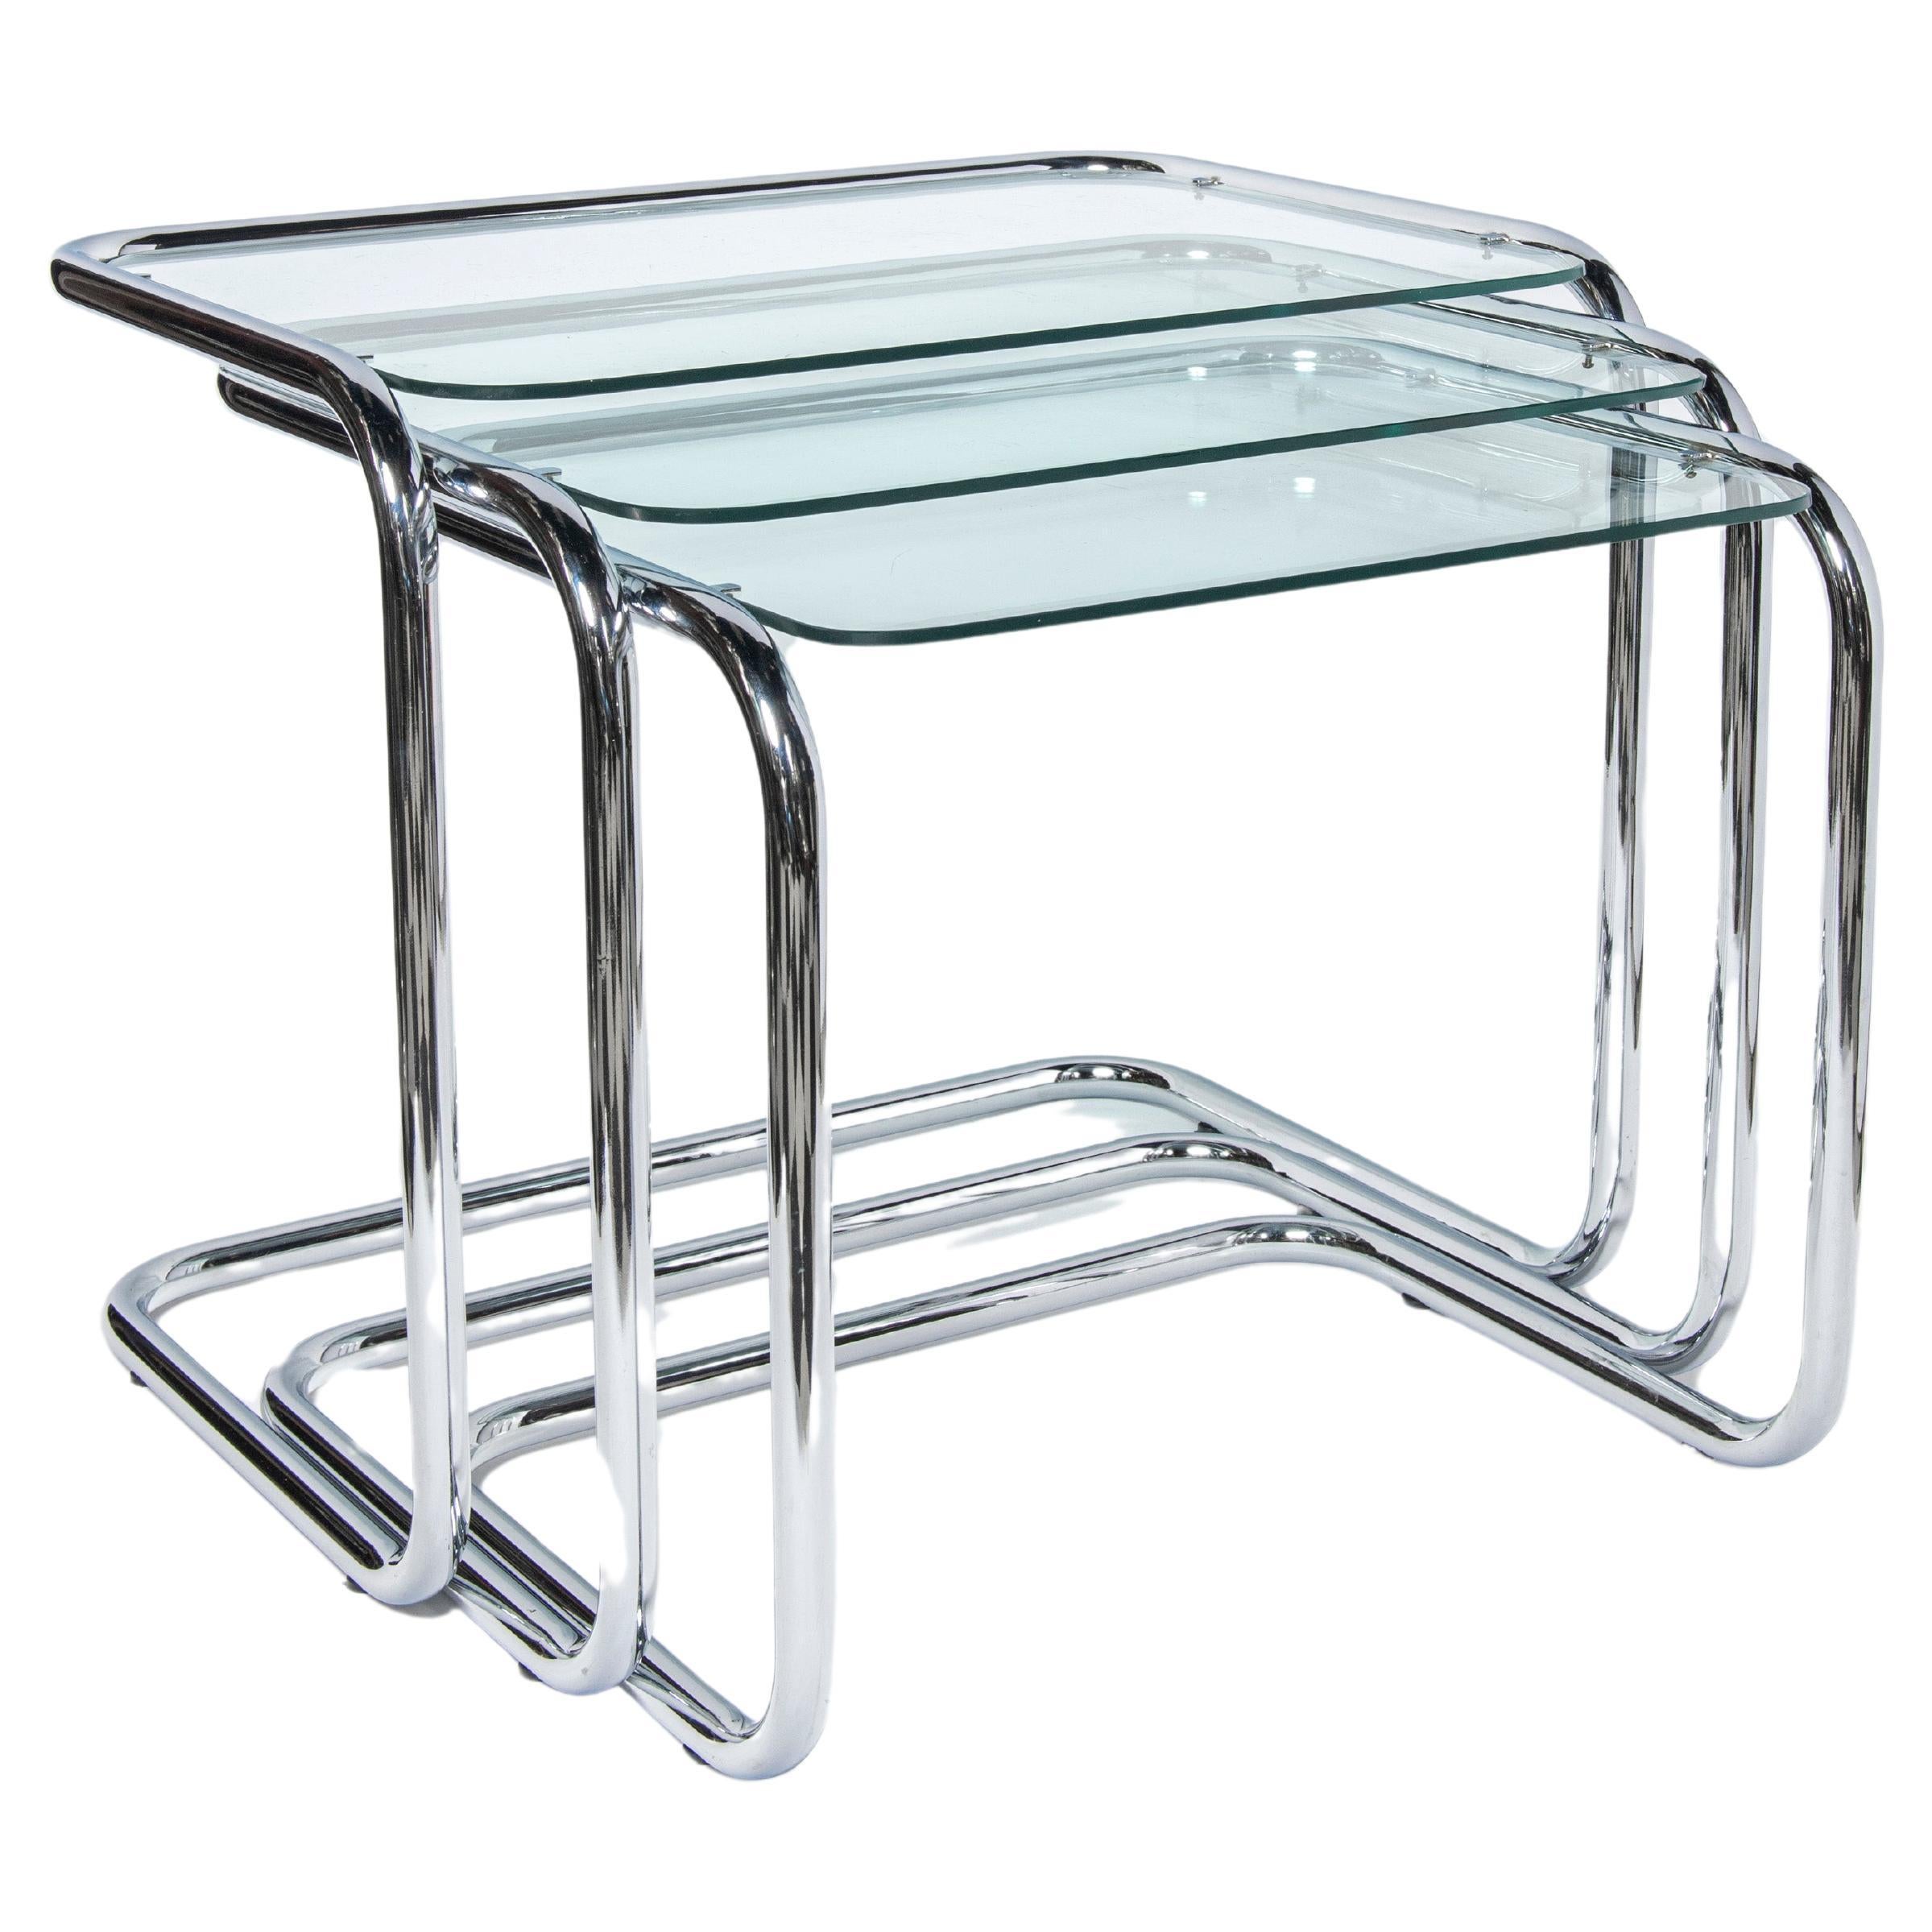 Chrome and glass nest tables Designed by Reinaldo Leiro and Arnoldo Gaite, 1970.